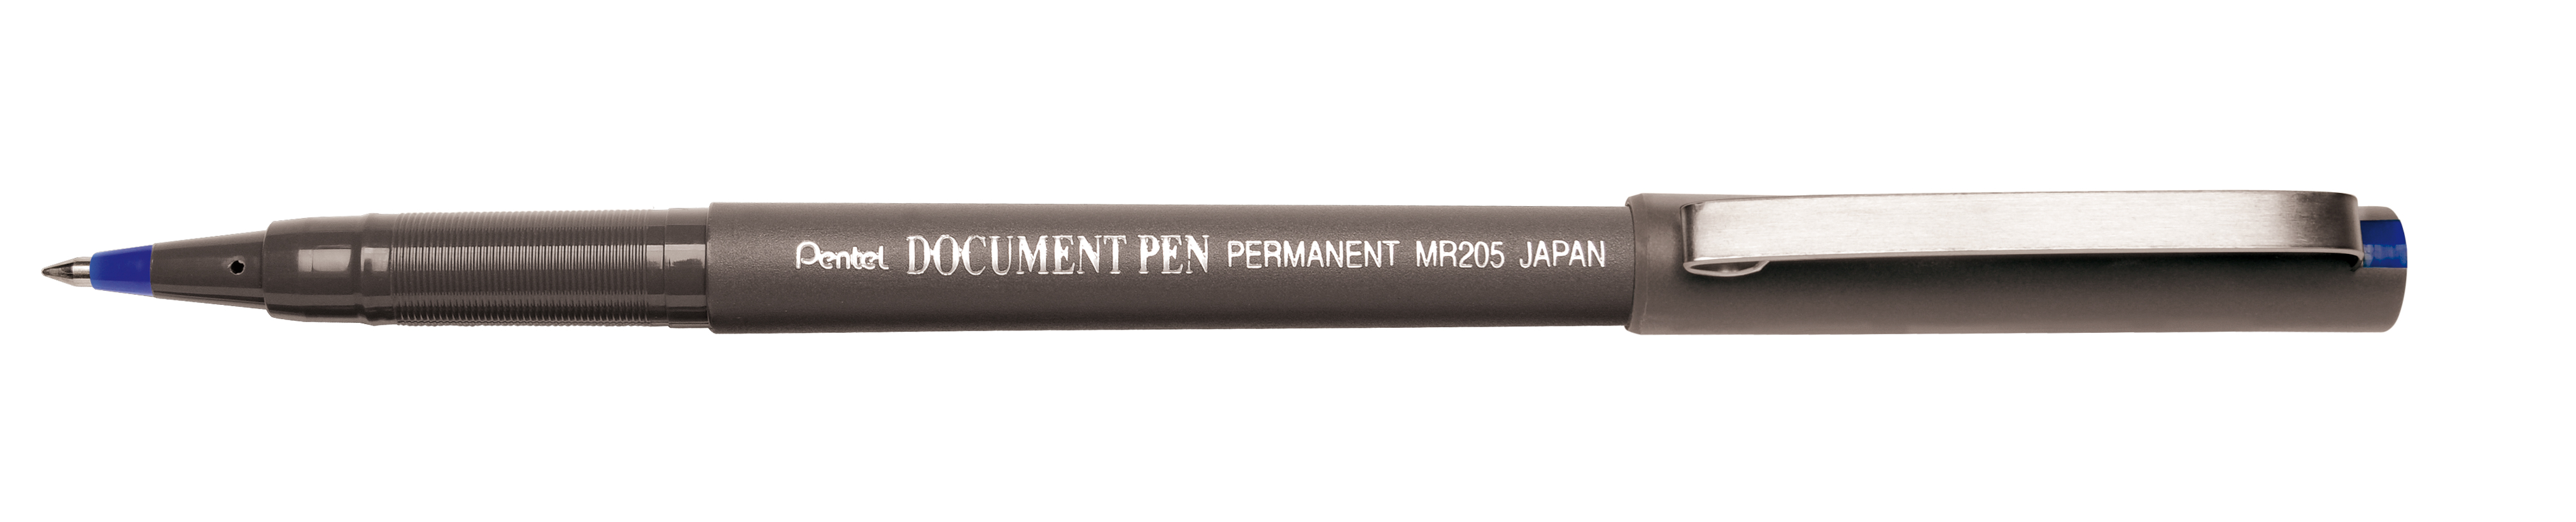 Tintenroller Document Pen